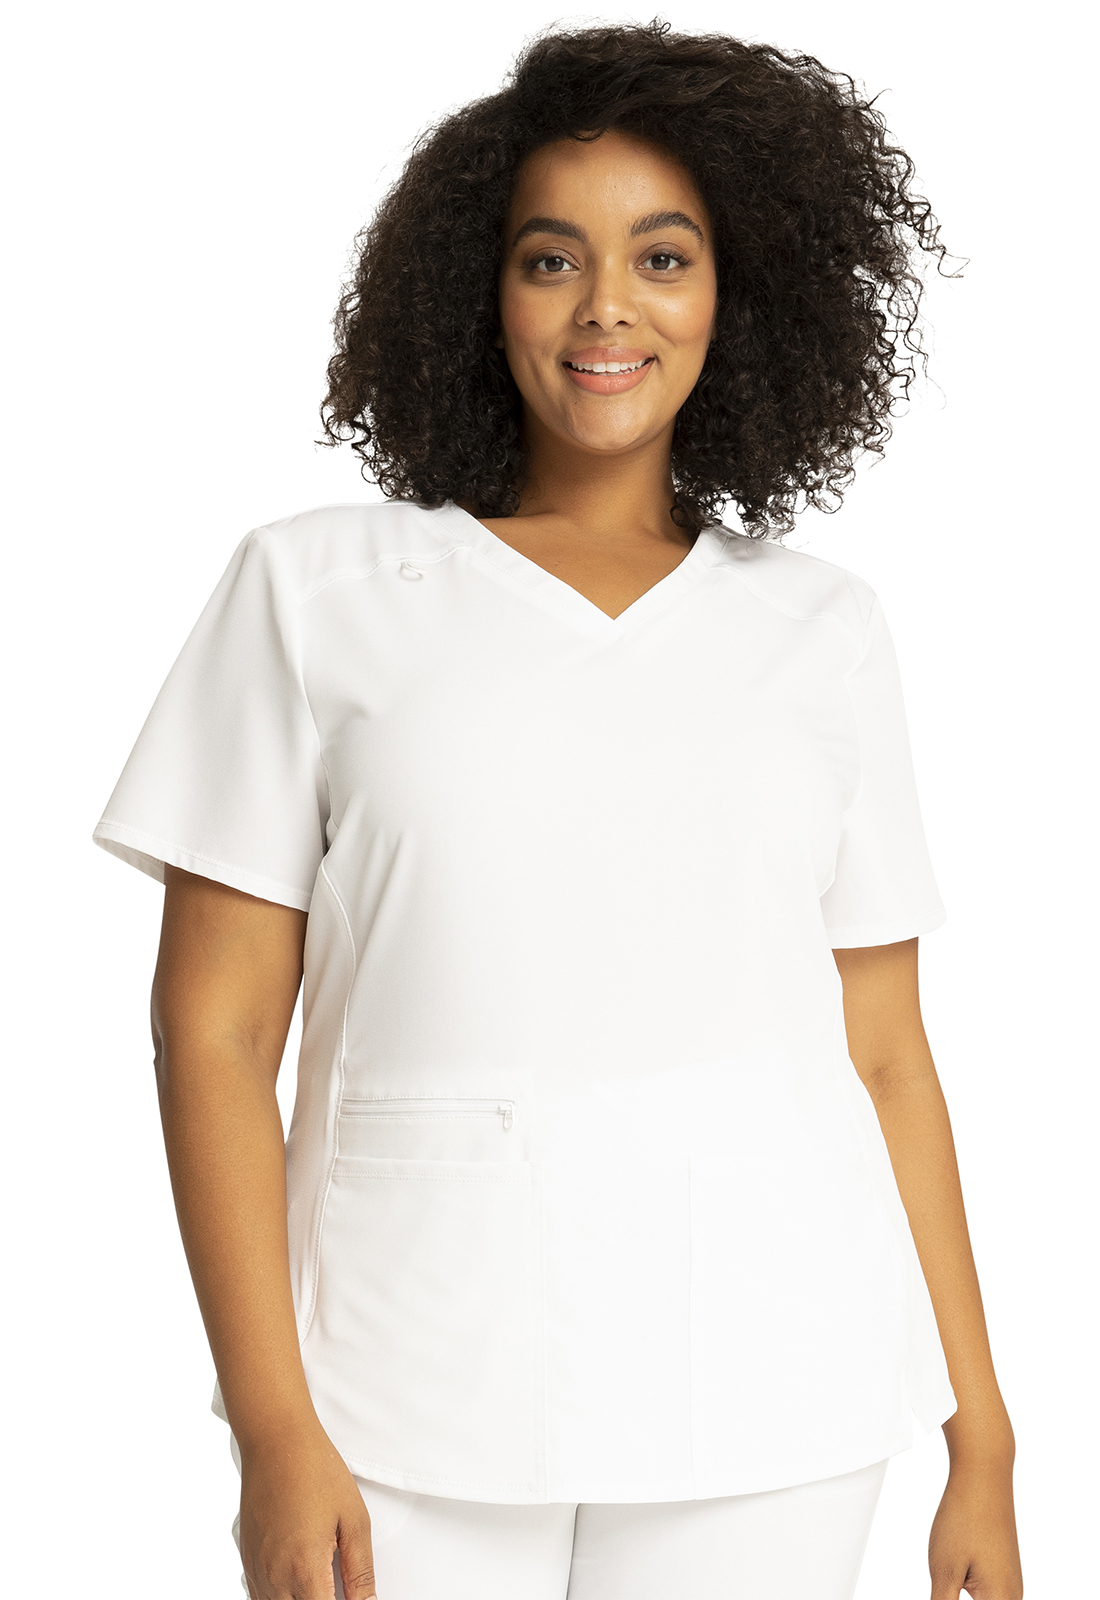 Élite Medical House - Blusa del uniforme médico mujer unicolor cherokee allura cka685 wht